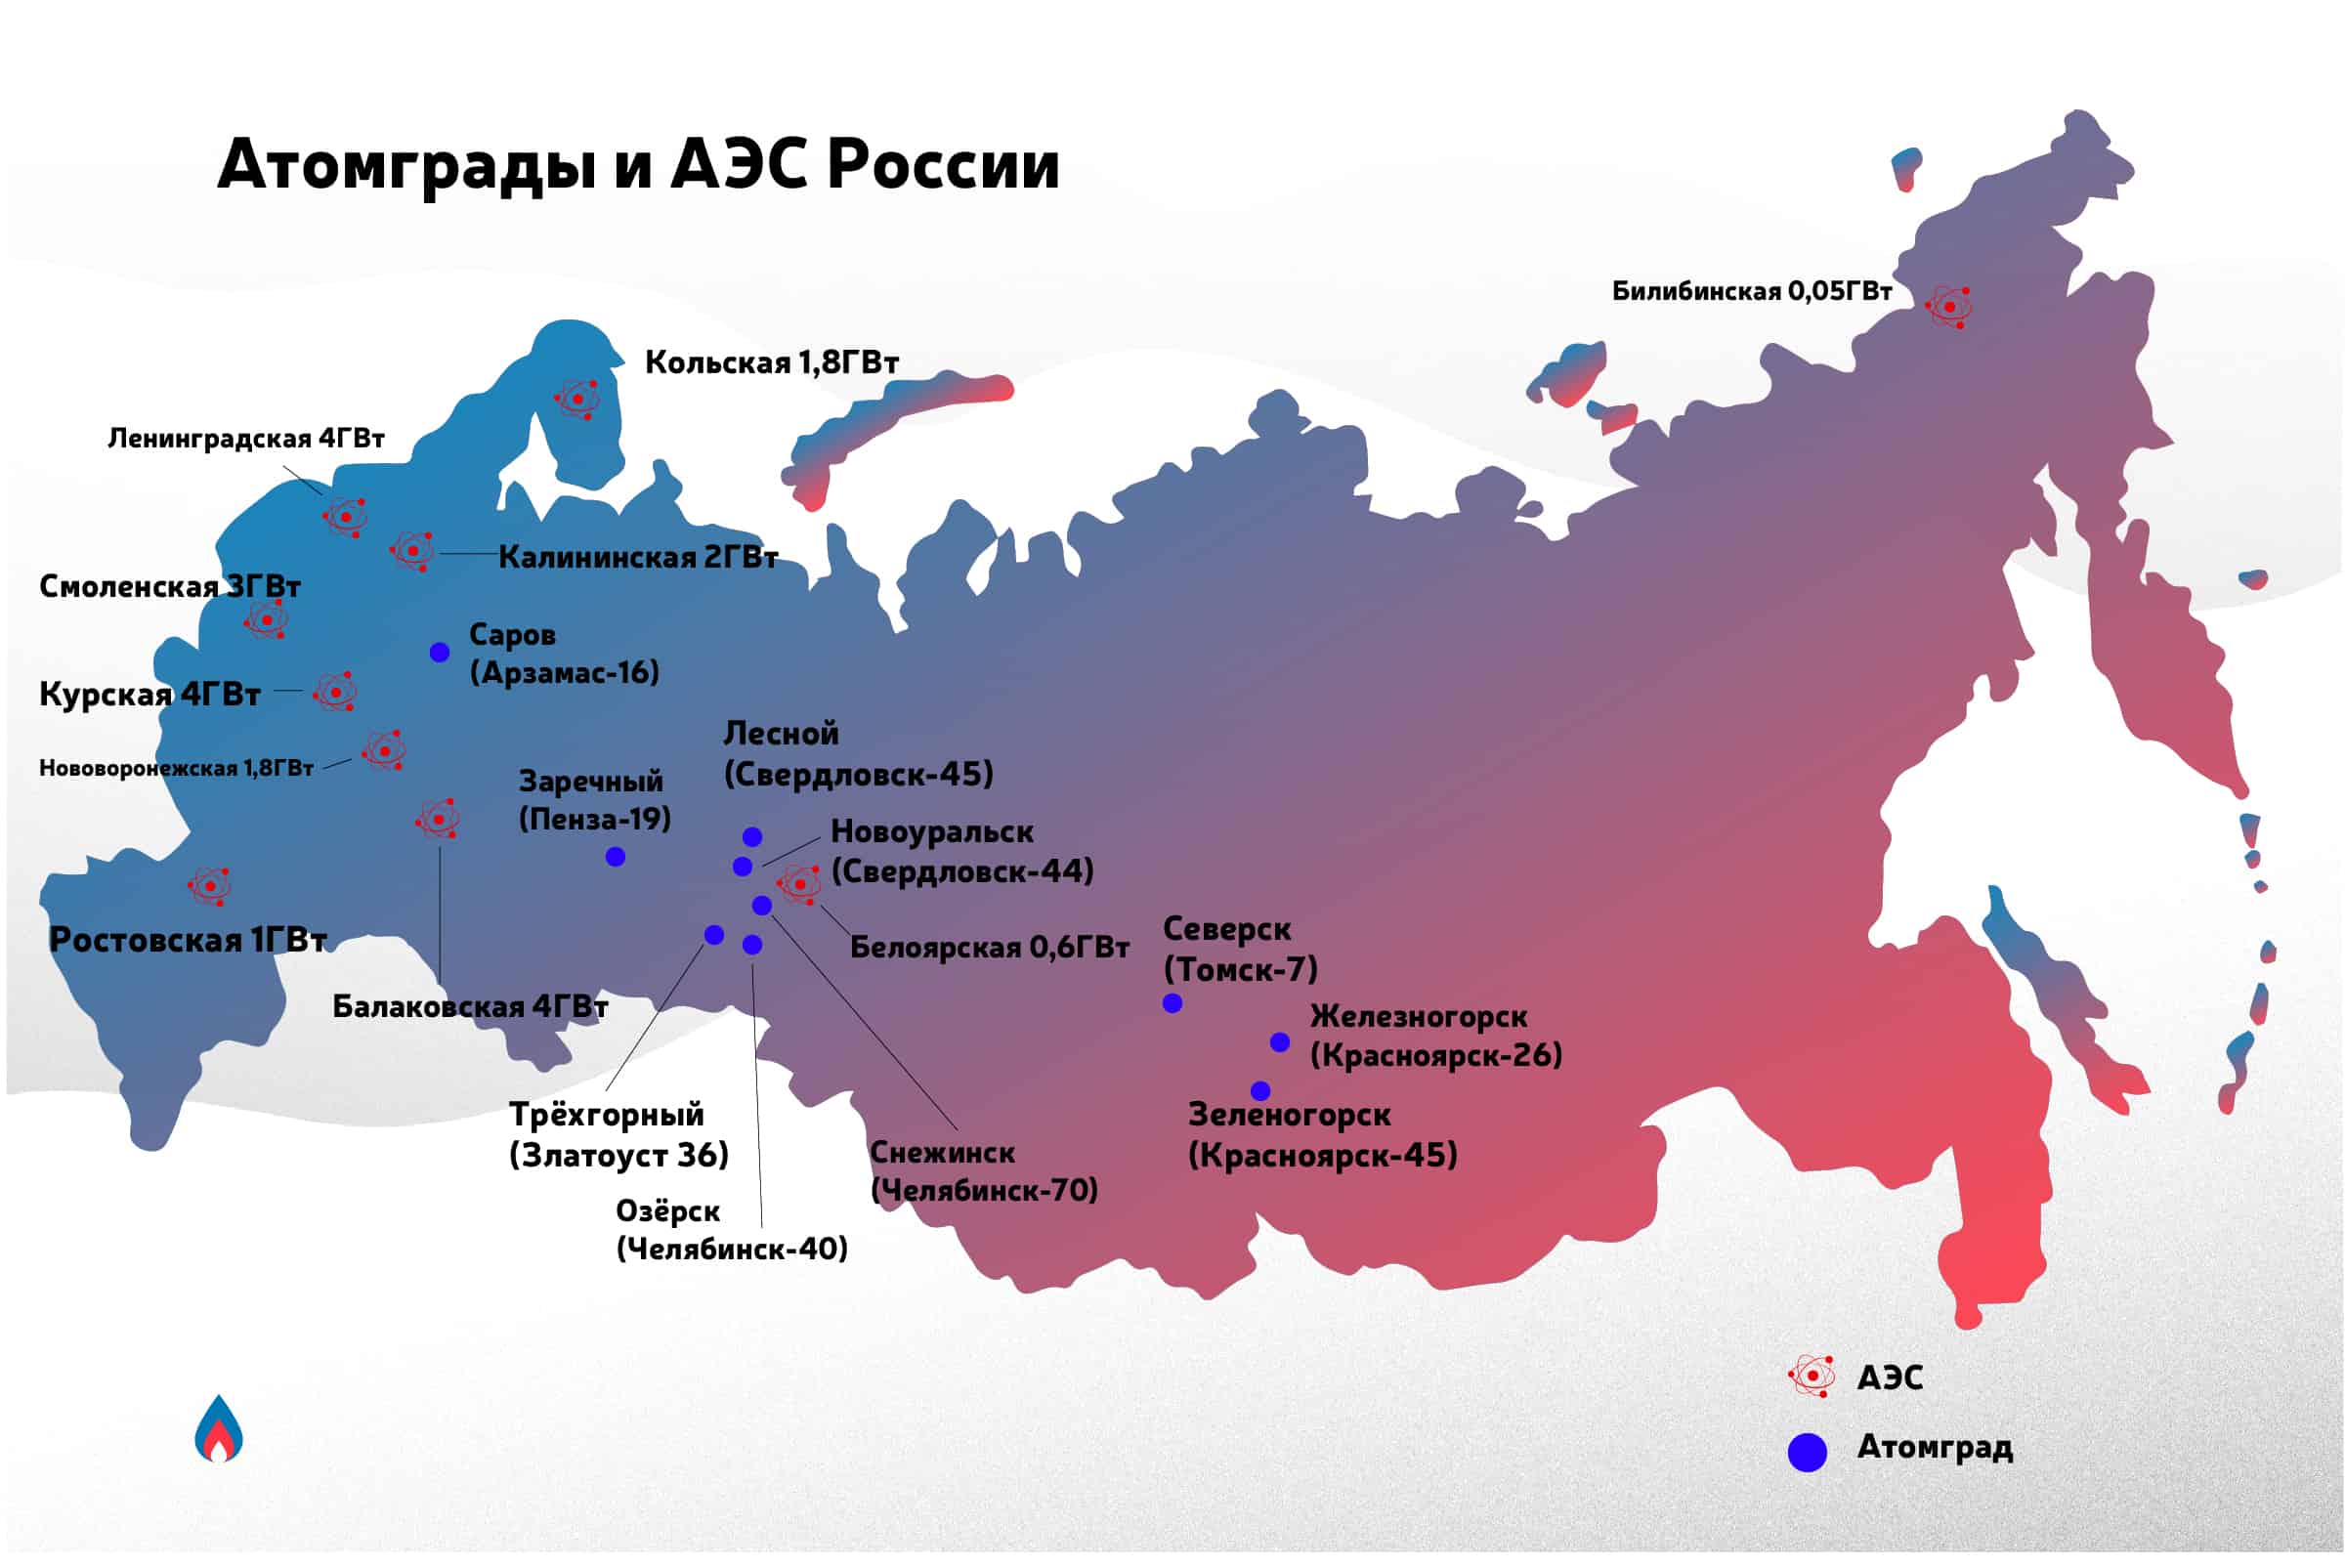 Какие города в аренде. Карта атомных электростанций России 2021. 5 Крупнейших АЭС России на карте. Атомные станции в России на карте 2021. Расположение на карте всех АЭС России.